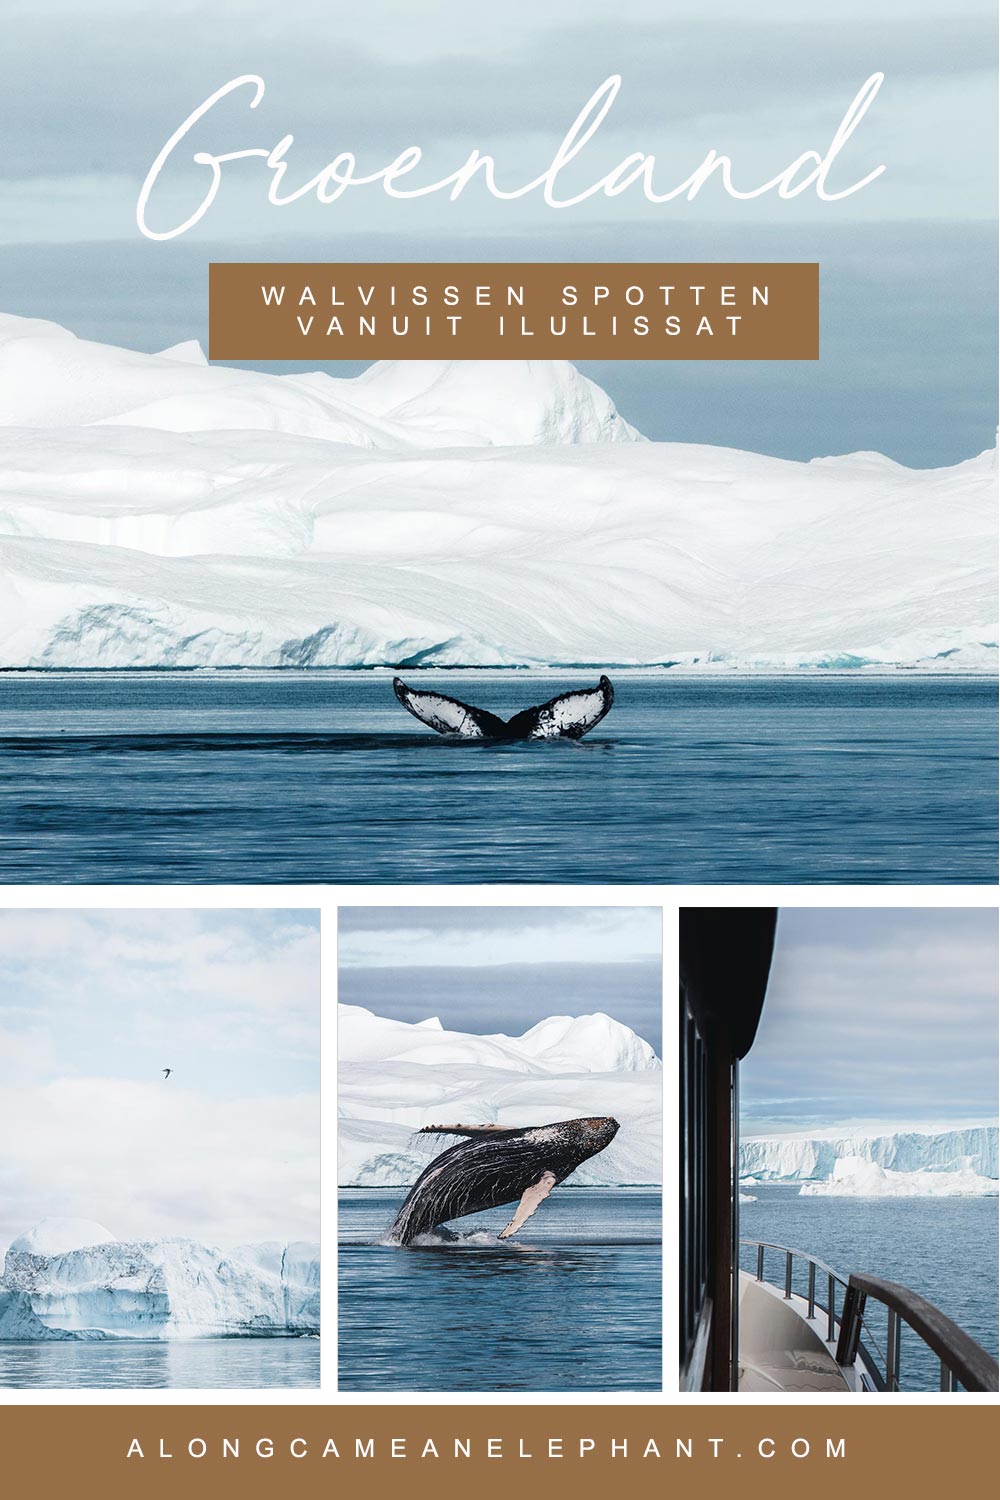 Lijkt walvissen kijken in Groenland je de max? Ga op een 3 uur walvissafari vanuit Ilulissat, een wildlife ervaring in Groenland om nooit te vergeten!  #groenland #walvissen #walvissafari #whalewatching